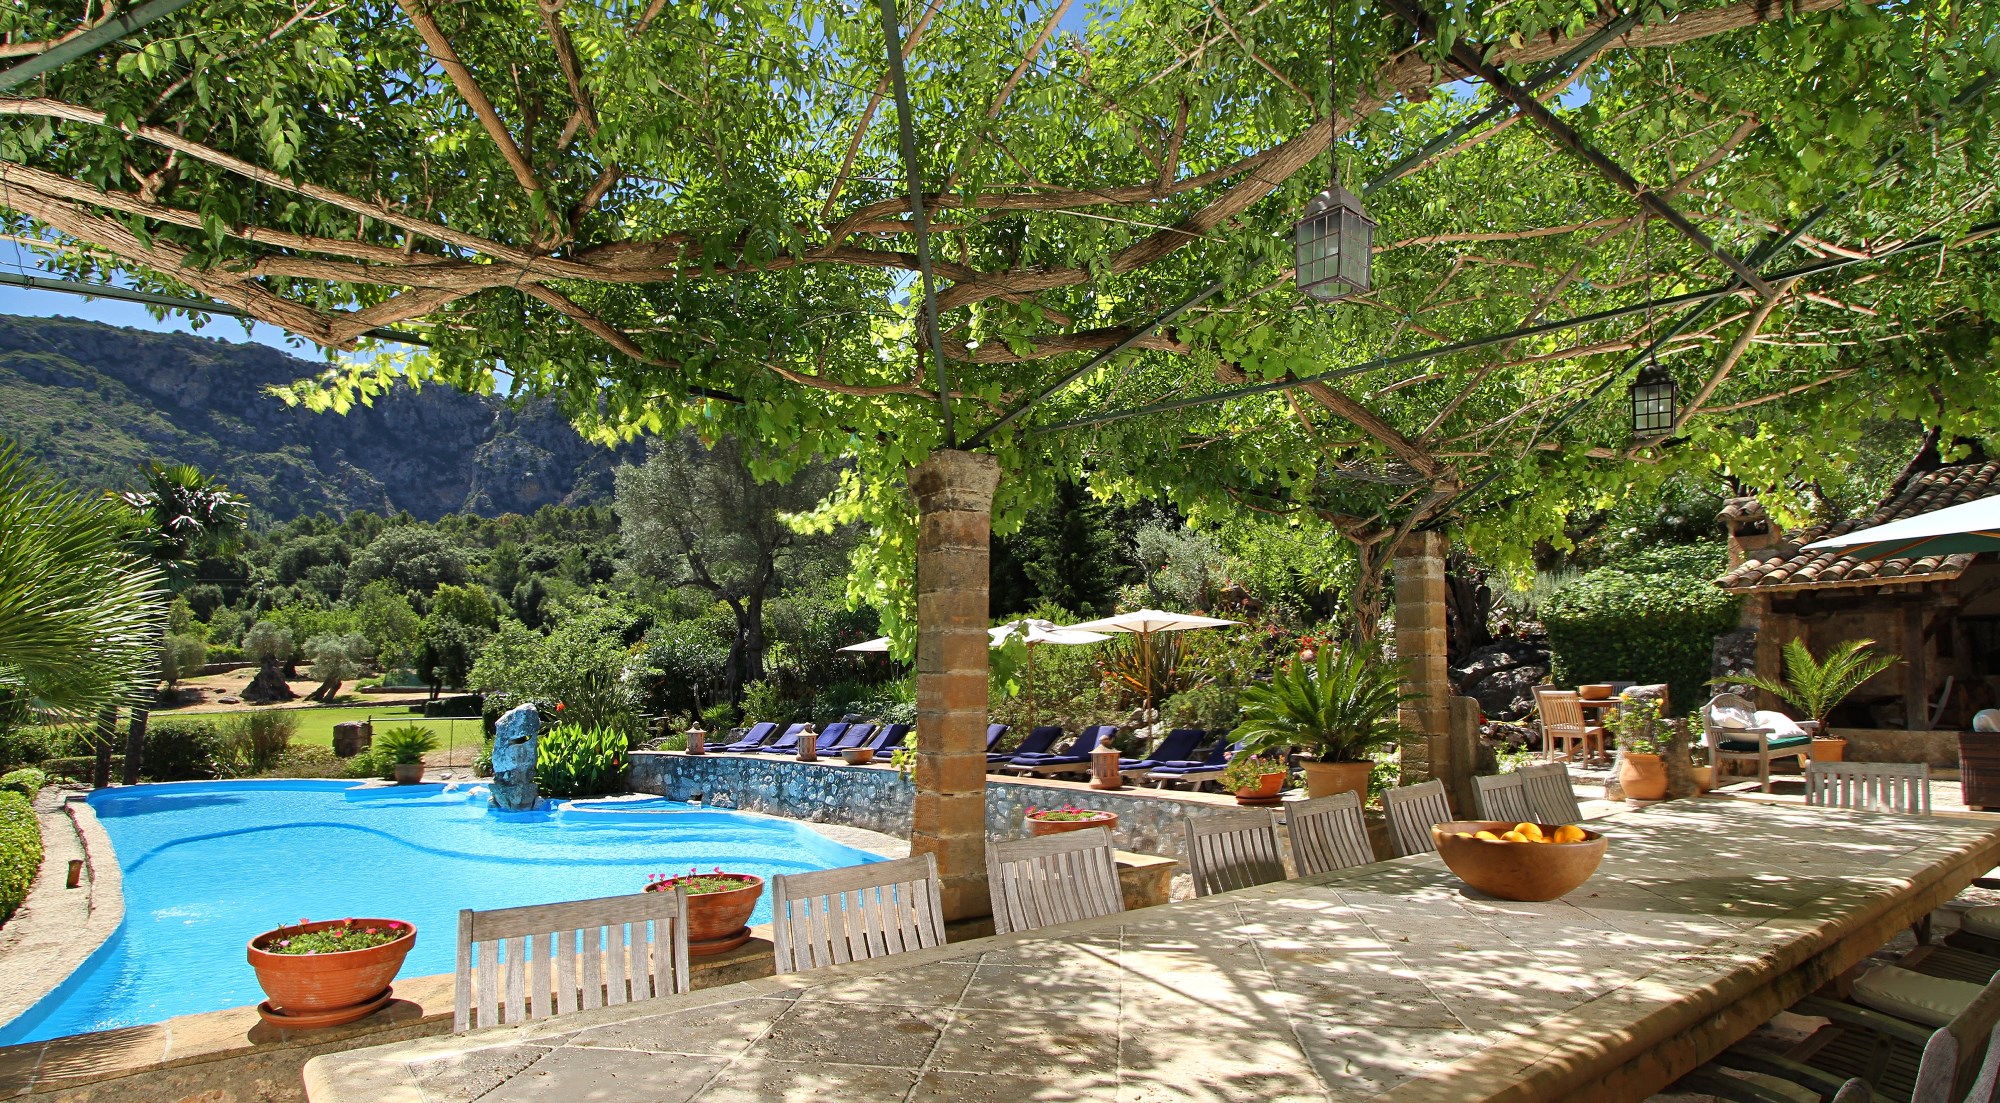 The swimming pool with terrace of Villa Poligono in Mallorca